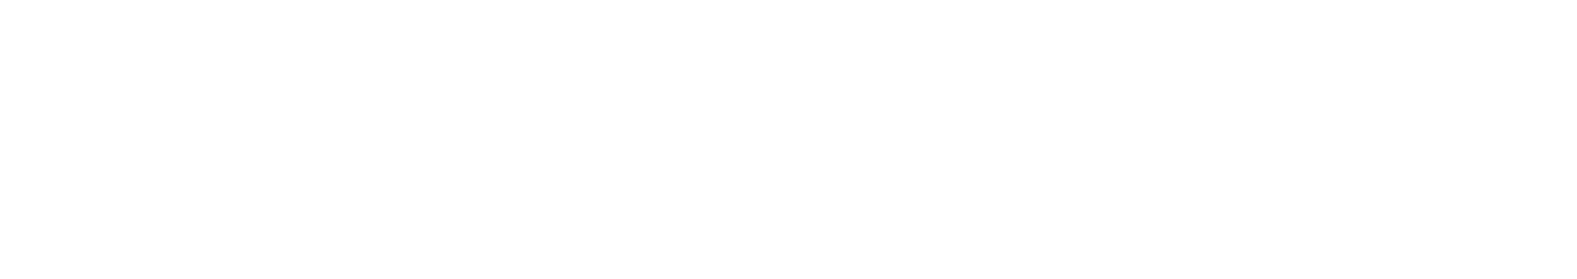 Microvast Logo groß für dunkle Hintergründe (transparentes PNG)